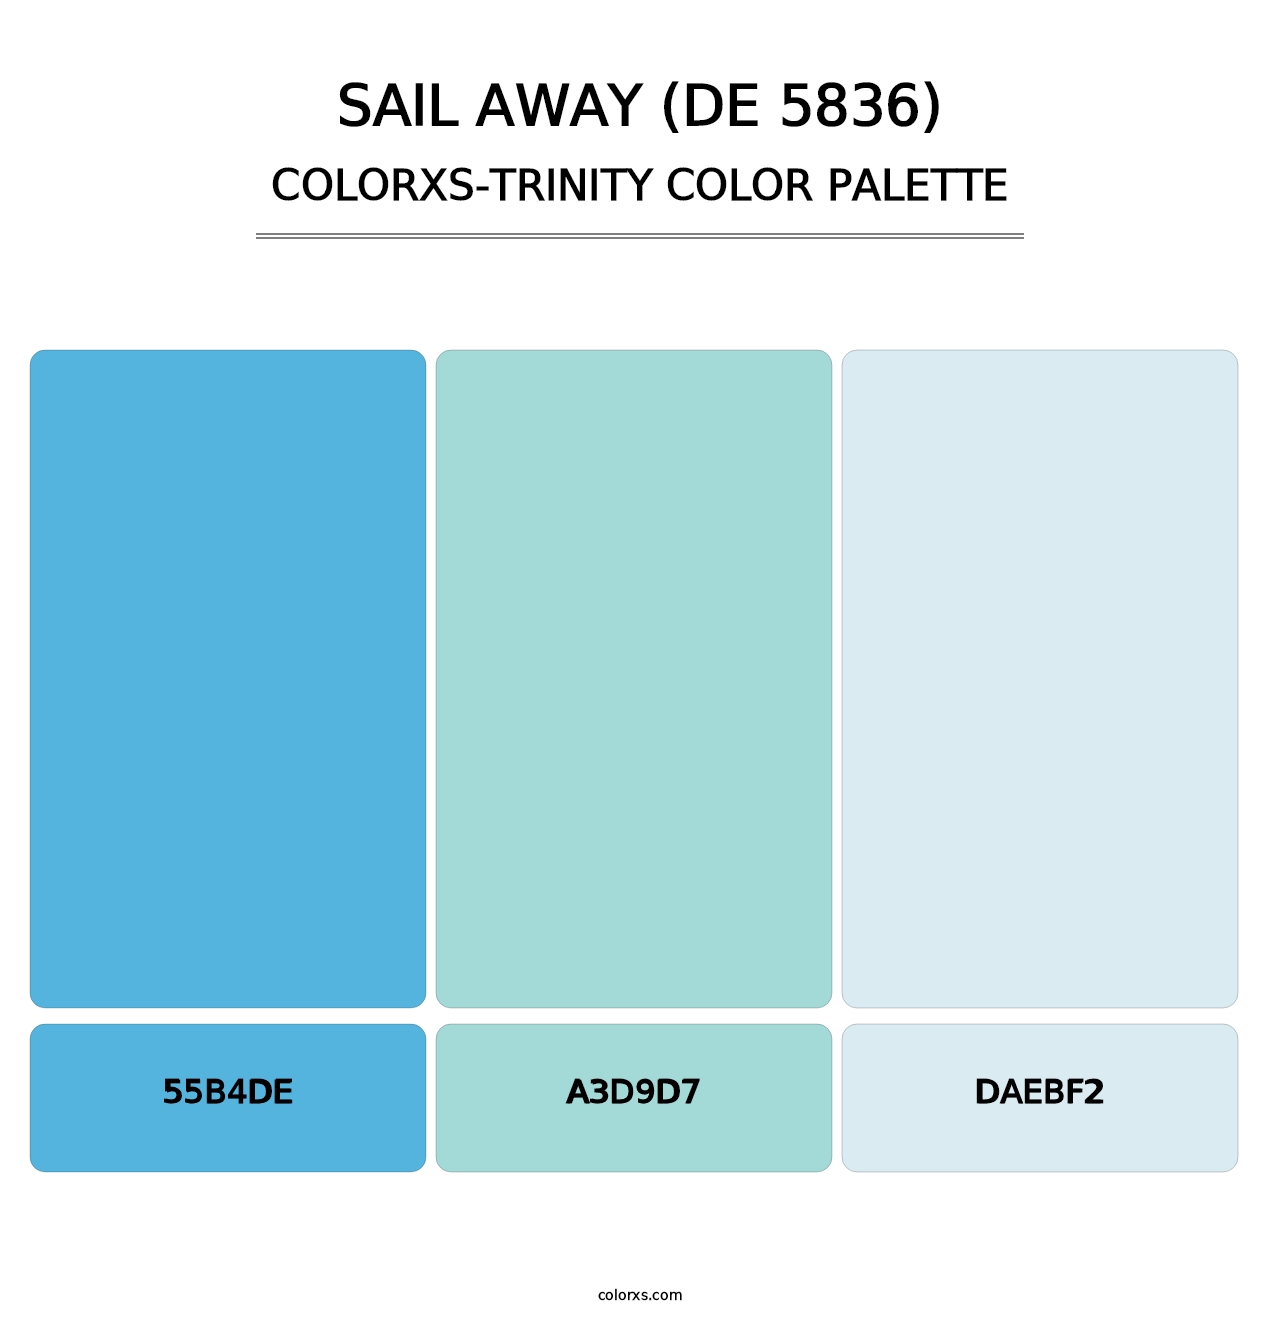 Sail Away (DE 5836) - Colorxs Trinity Palette